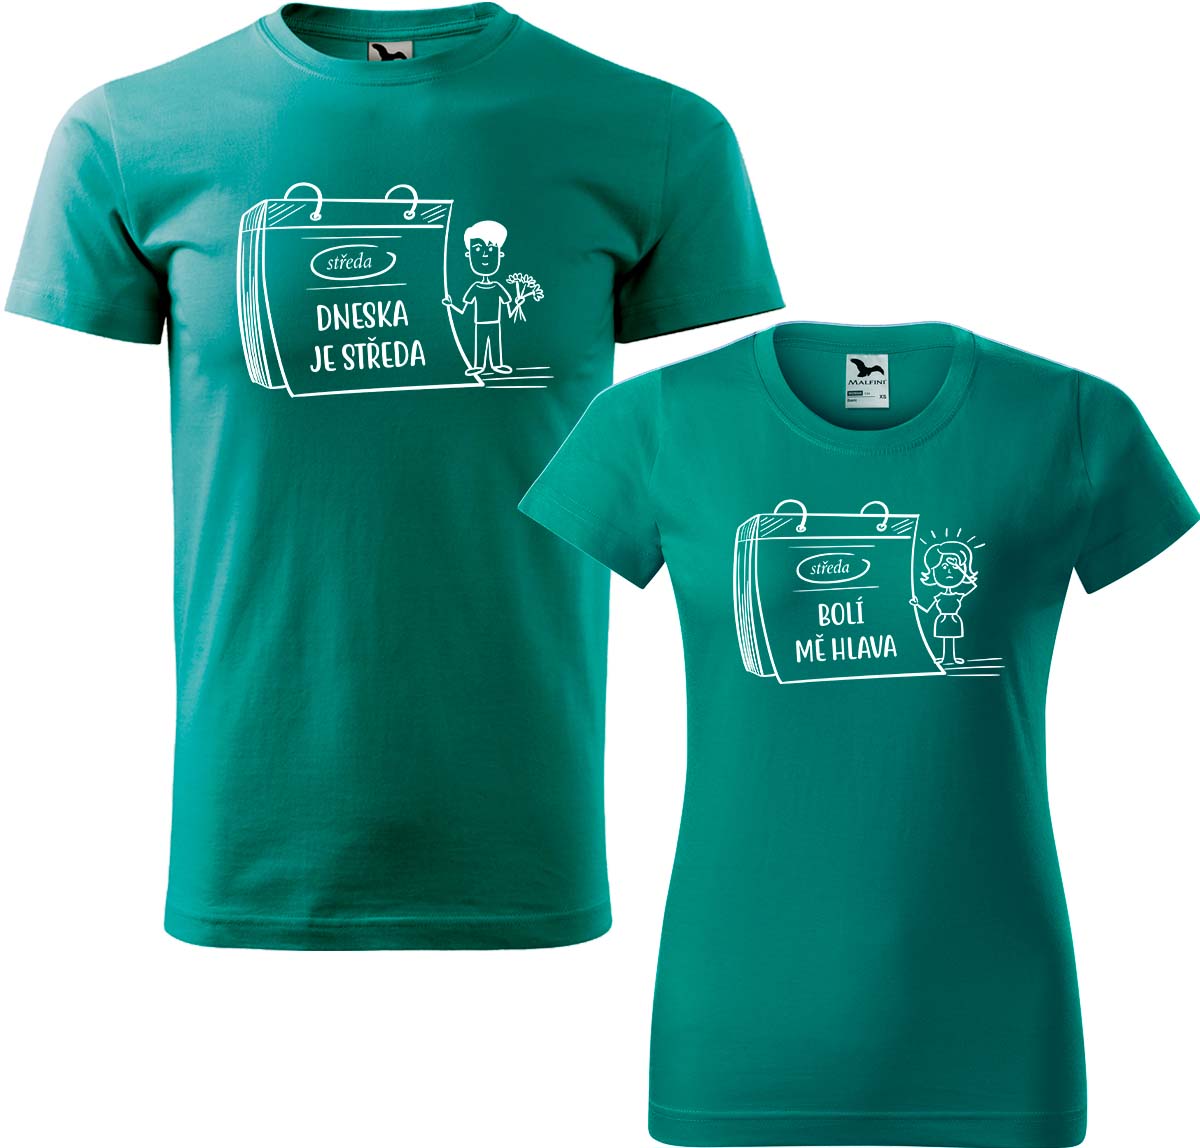 Trička pro páry - Dneska je středa Barva: Emerald (19), Velikost dámské tričko: M, Velikost pánské tričko: XL